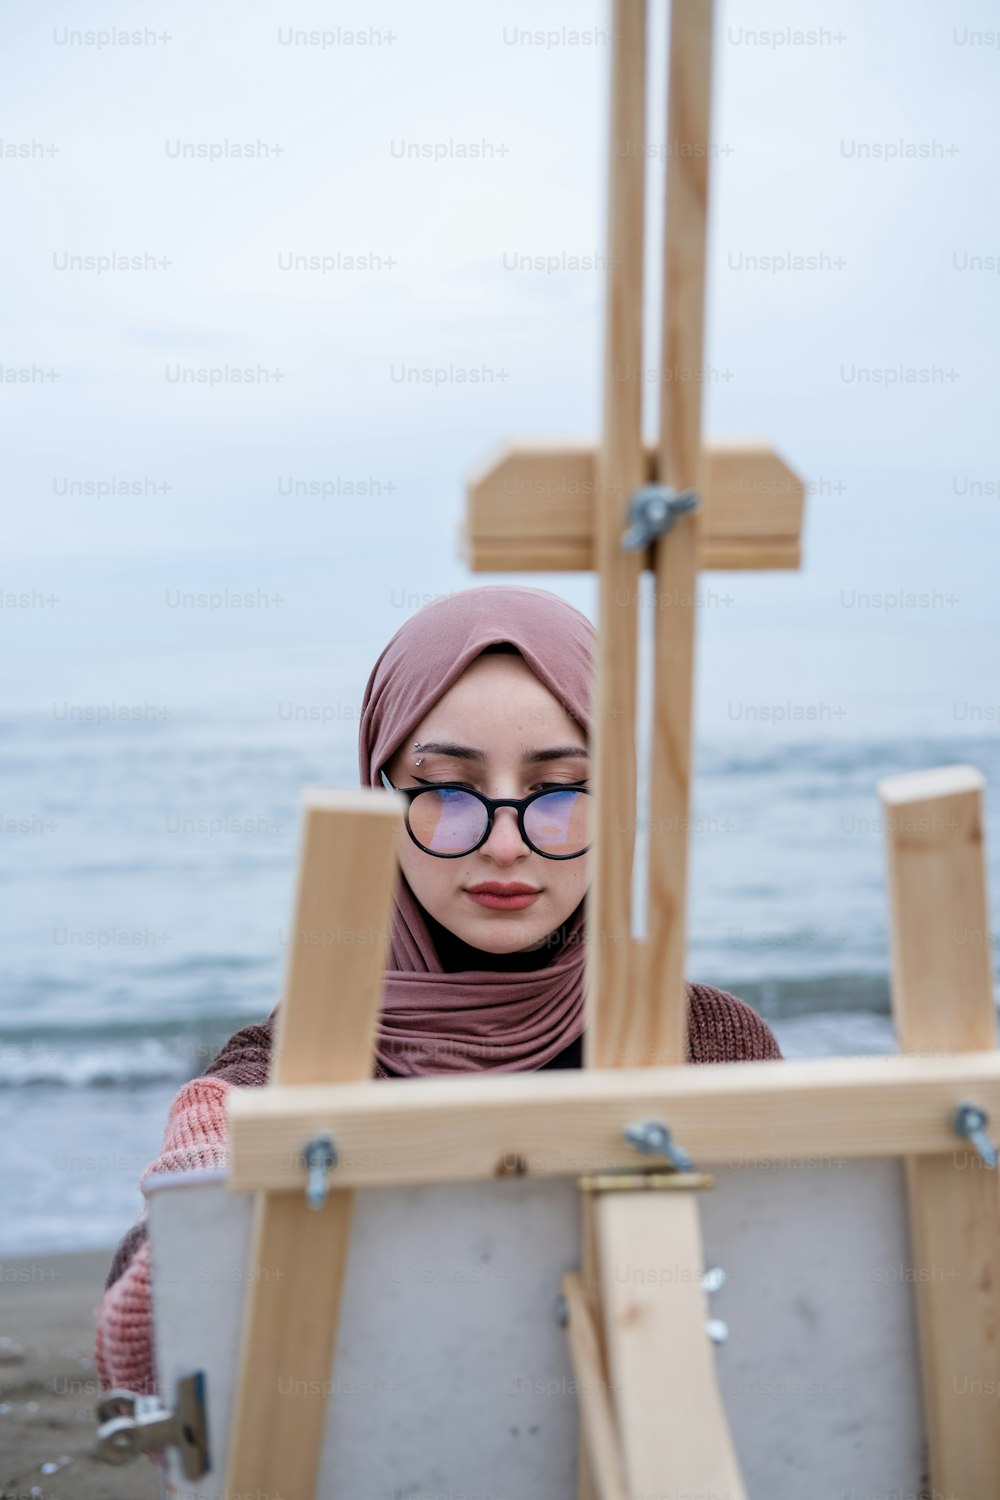 uma mulher usando óculos e um hijab está olhando para um cavalete de pintura